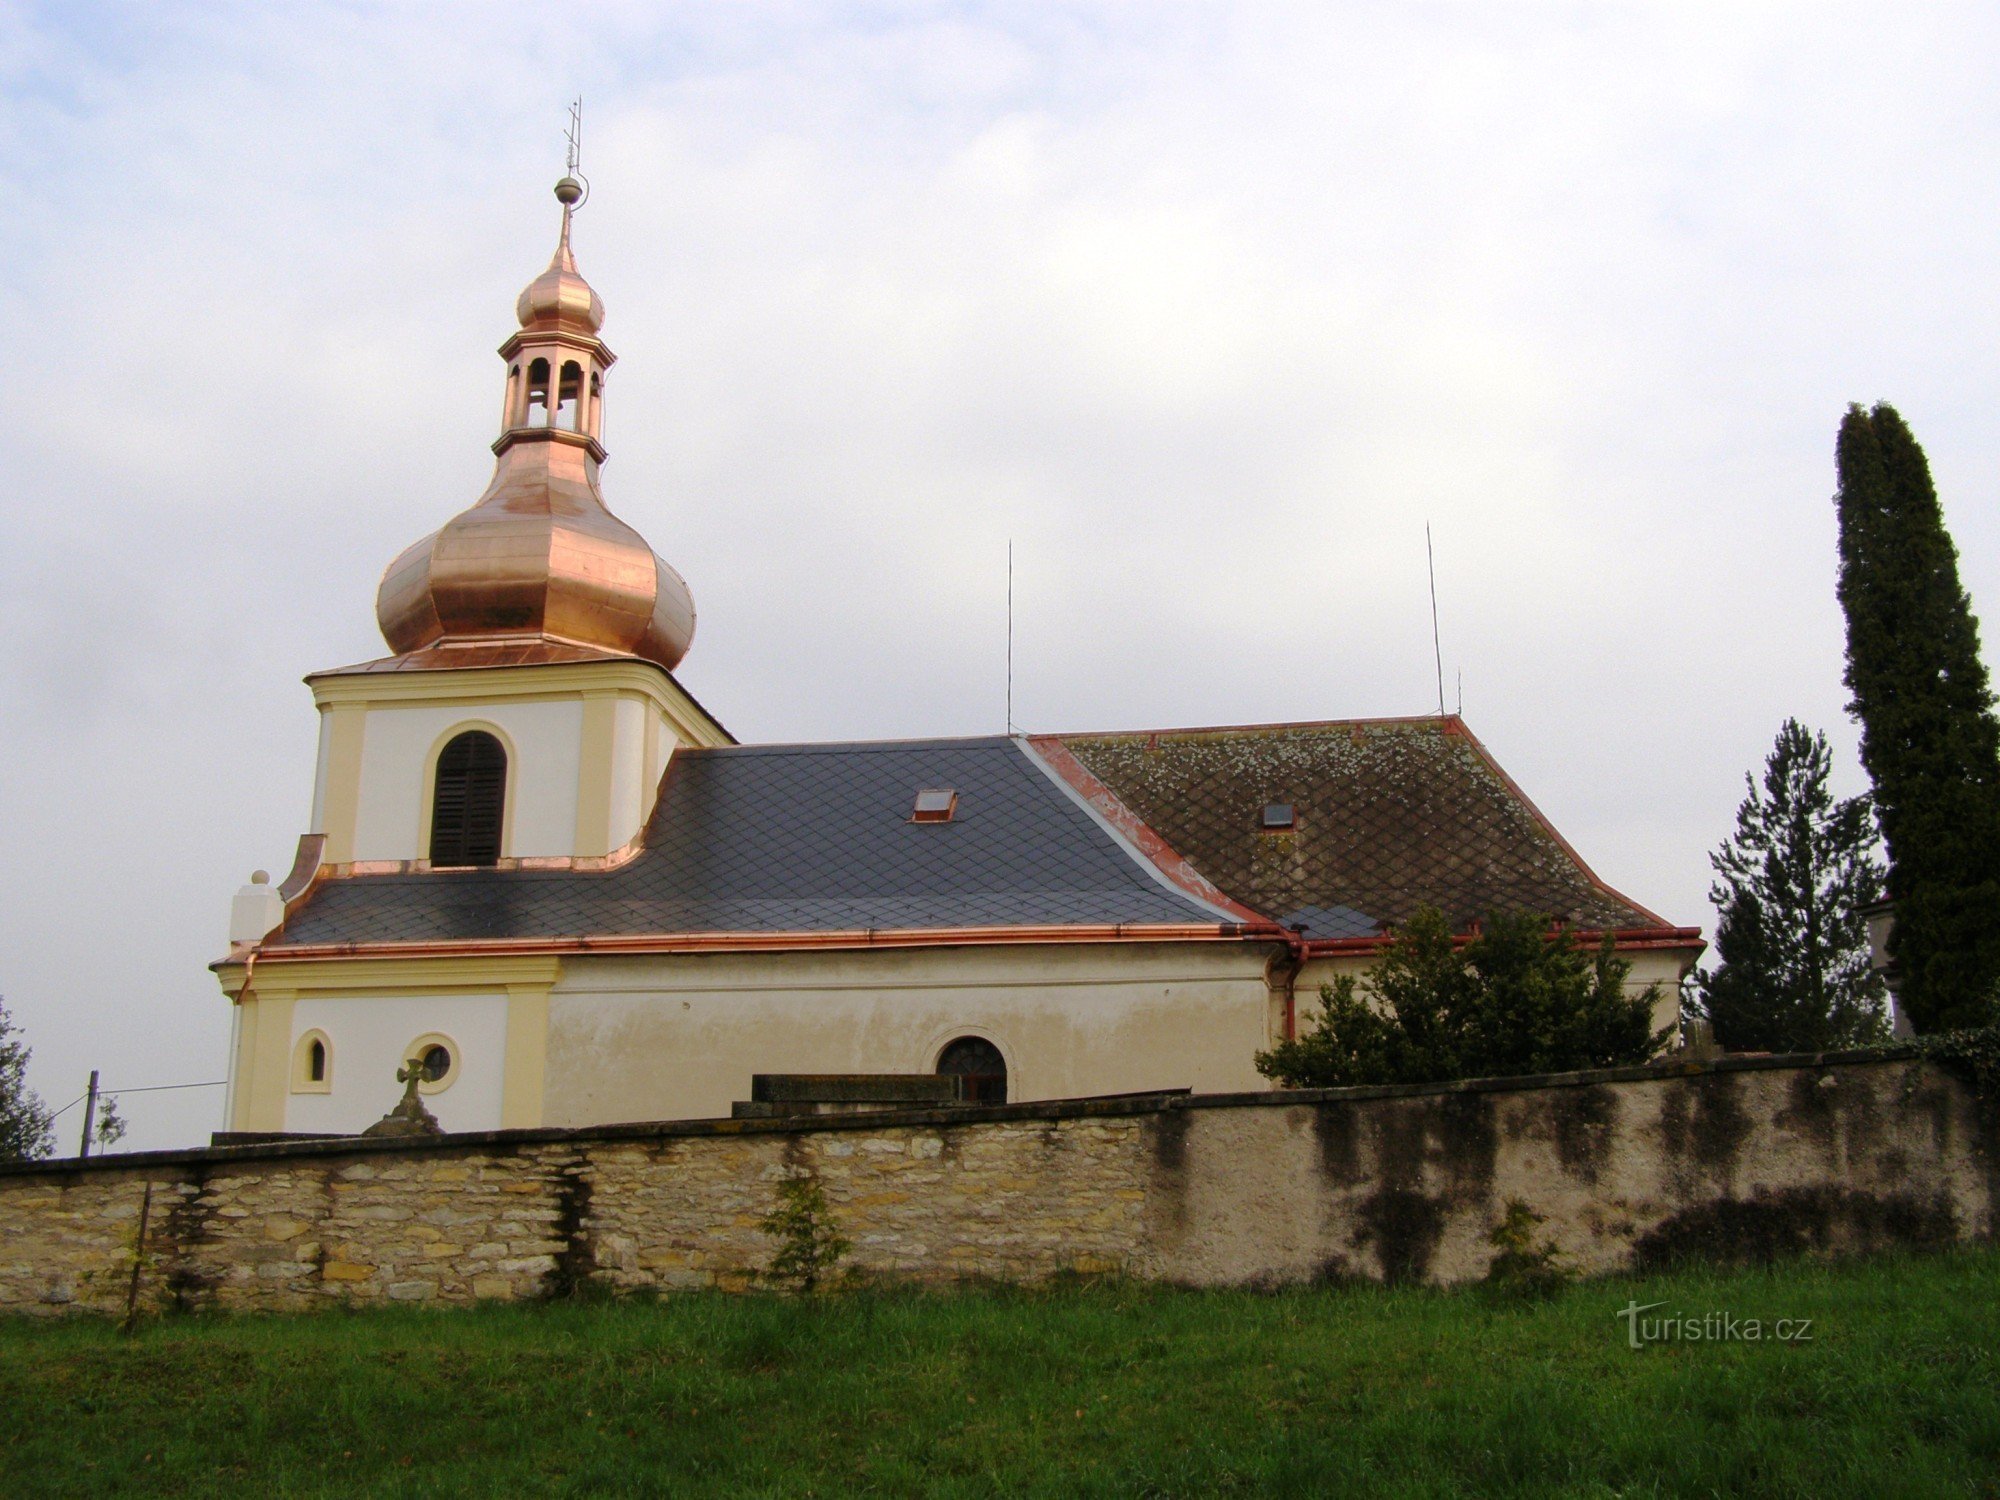 Běstovice - Biserica Tuturor Sfinților